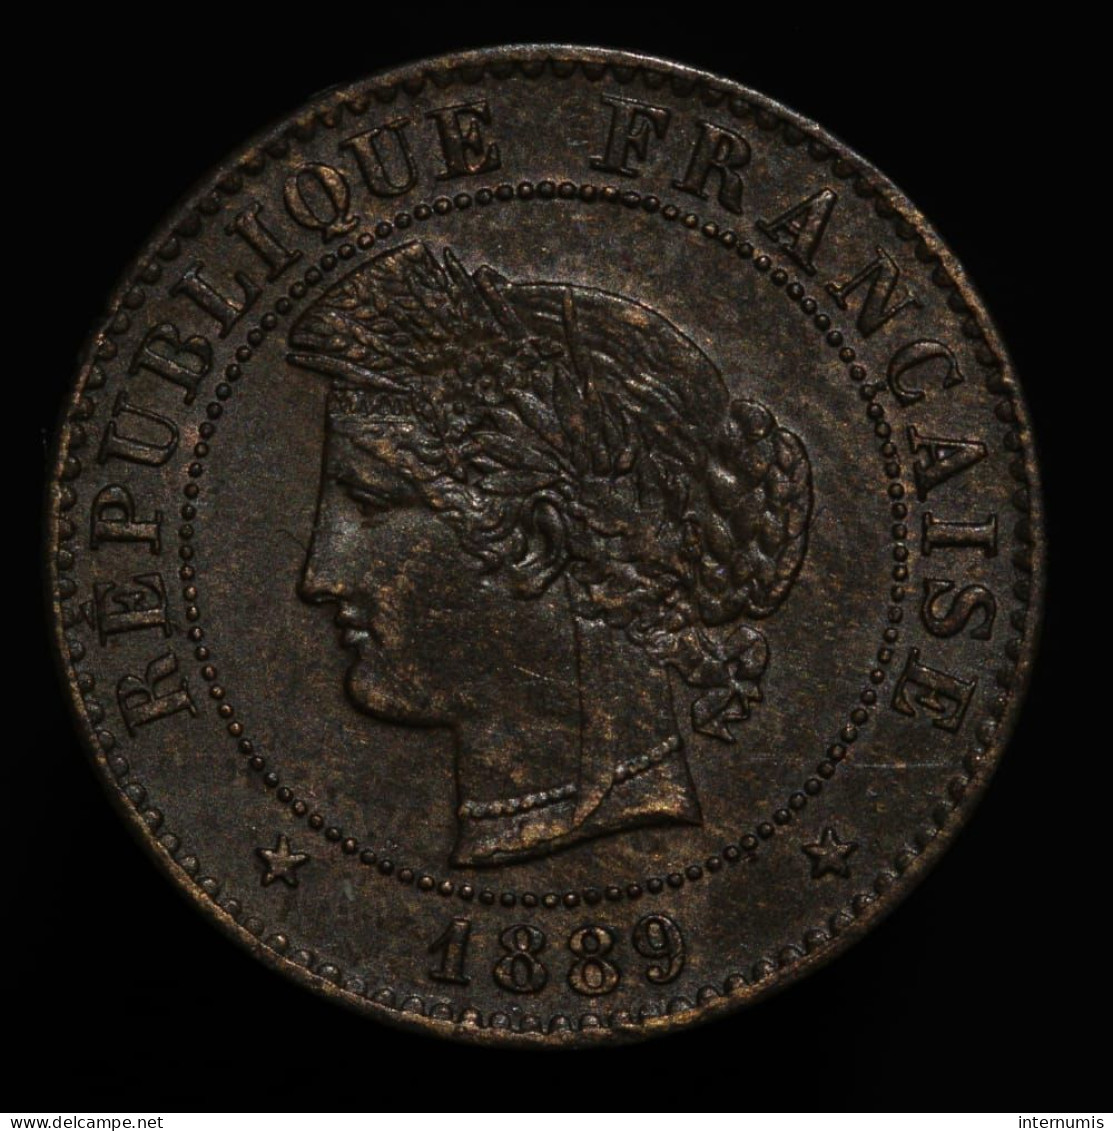 France, Cérès, 1 Centime, 1889, Bronze, SUP (AU), KM#826.1, G.88, F.104/16 - 1 Centime